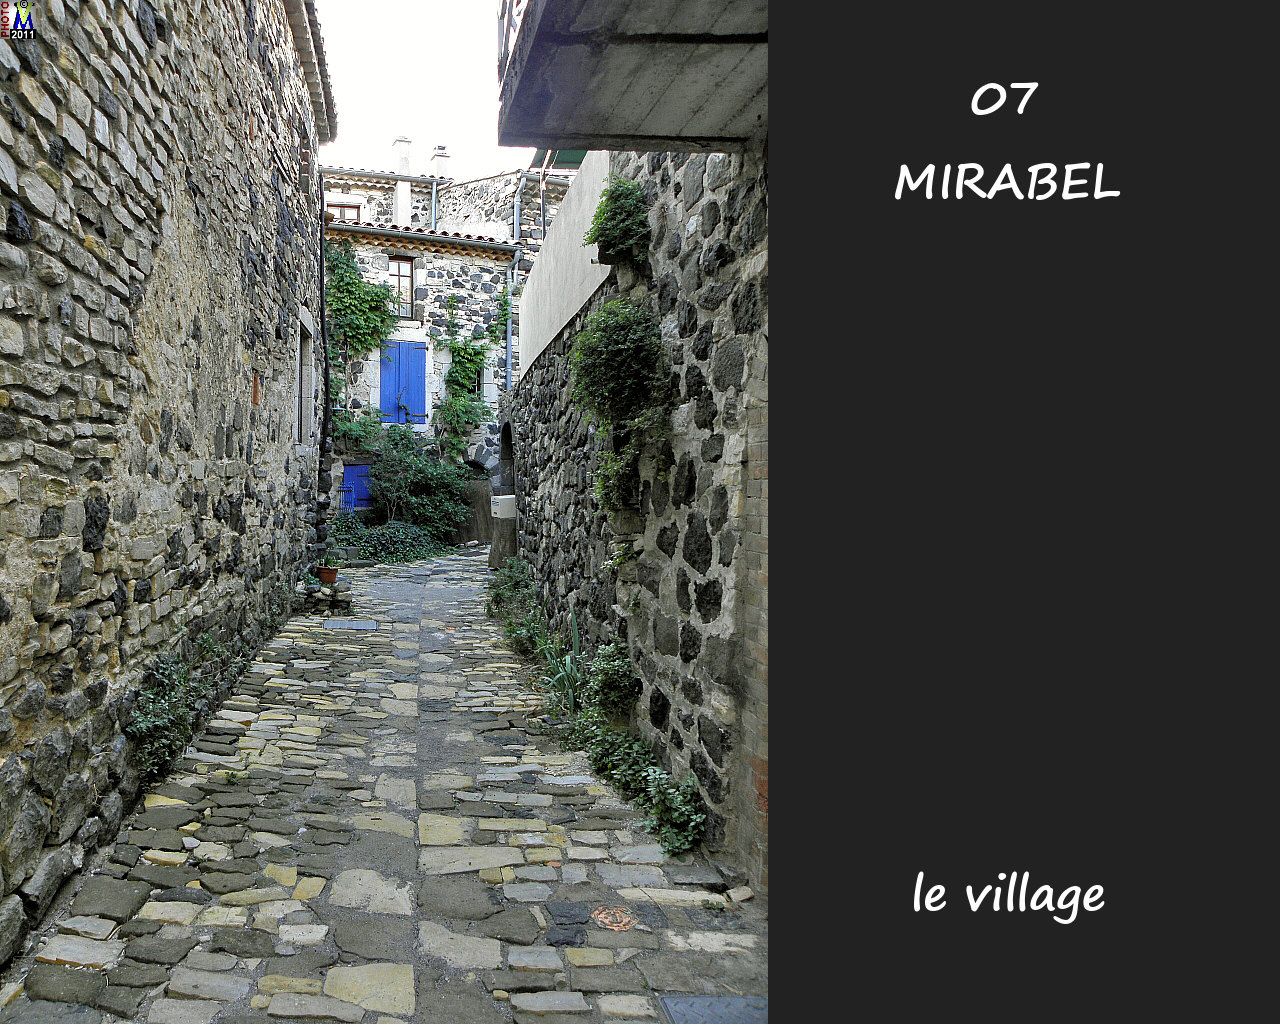 07MIRABEL_village_134.jpg